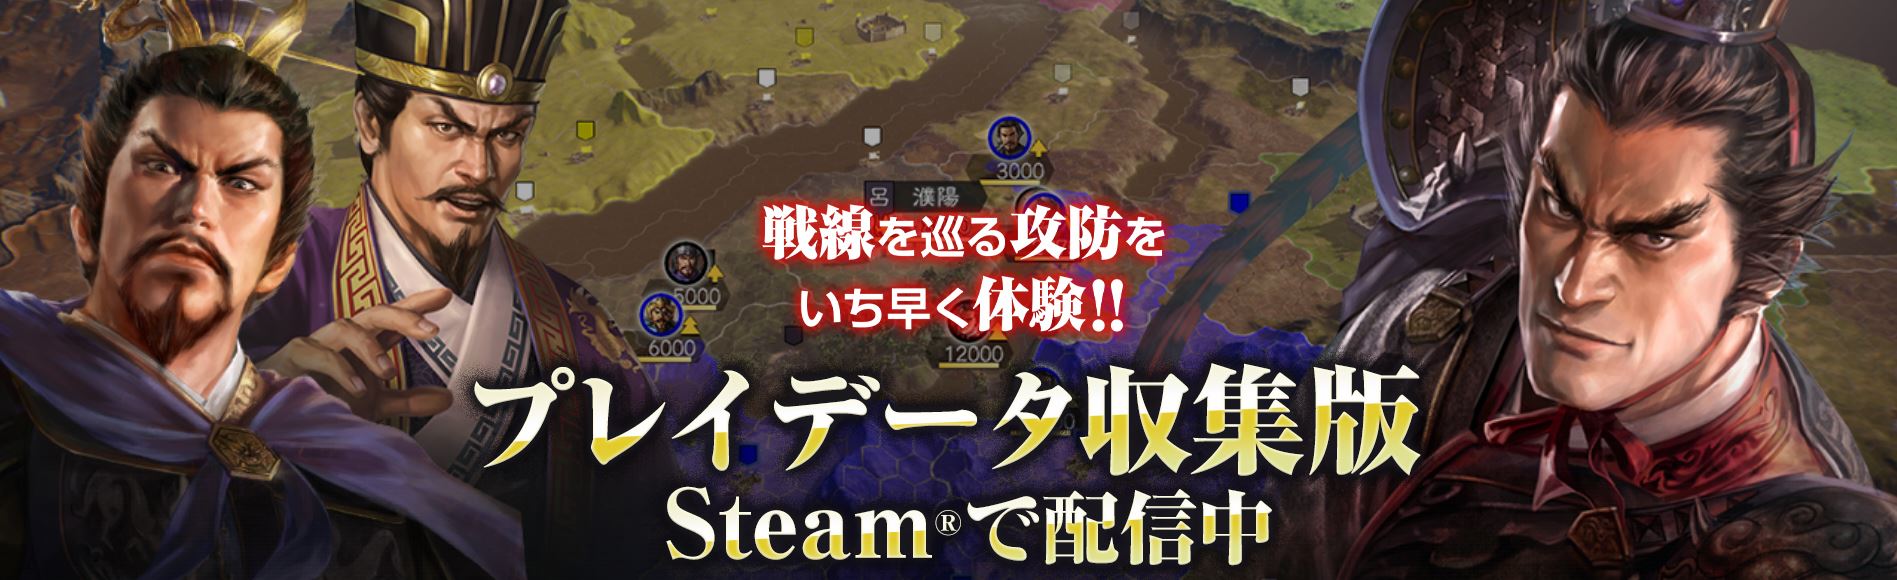 《三國志14》PC免費體驗版開放下載 暫時隻支持日文